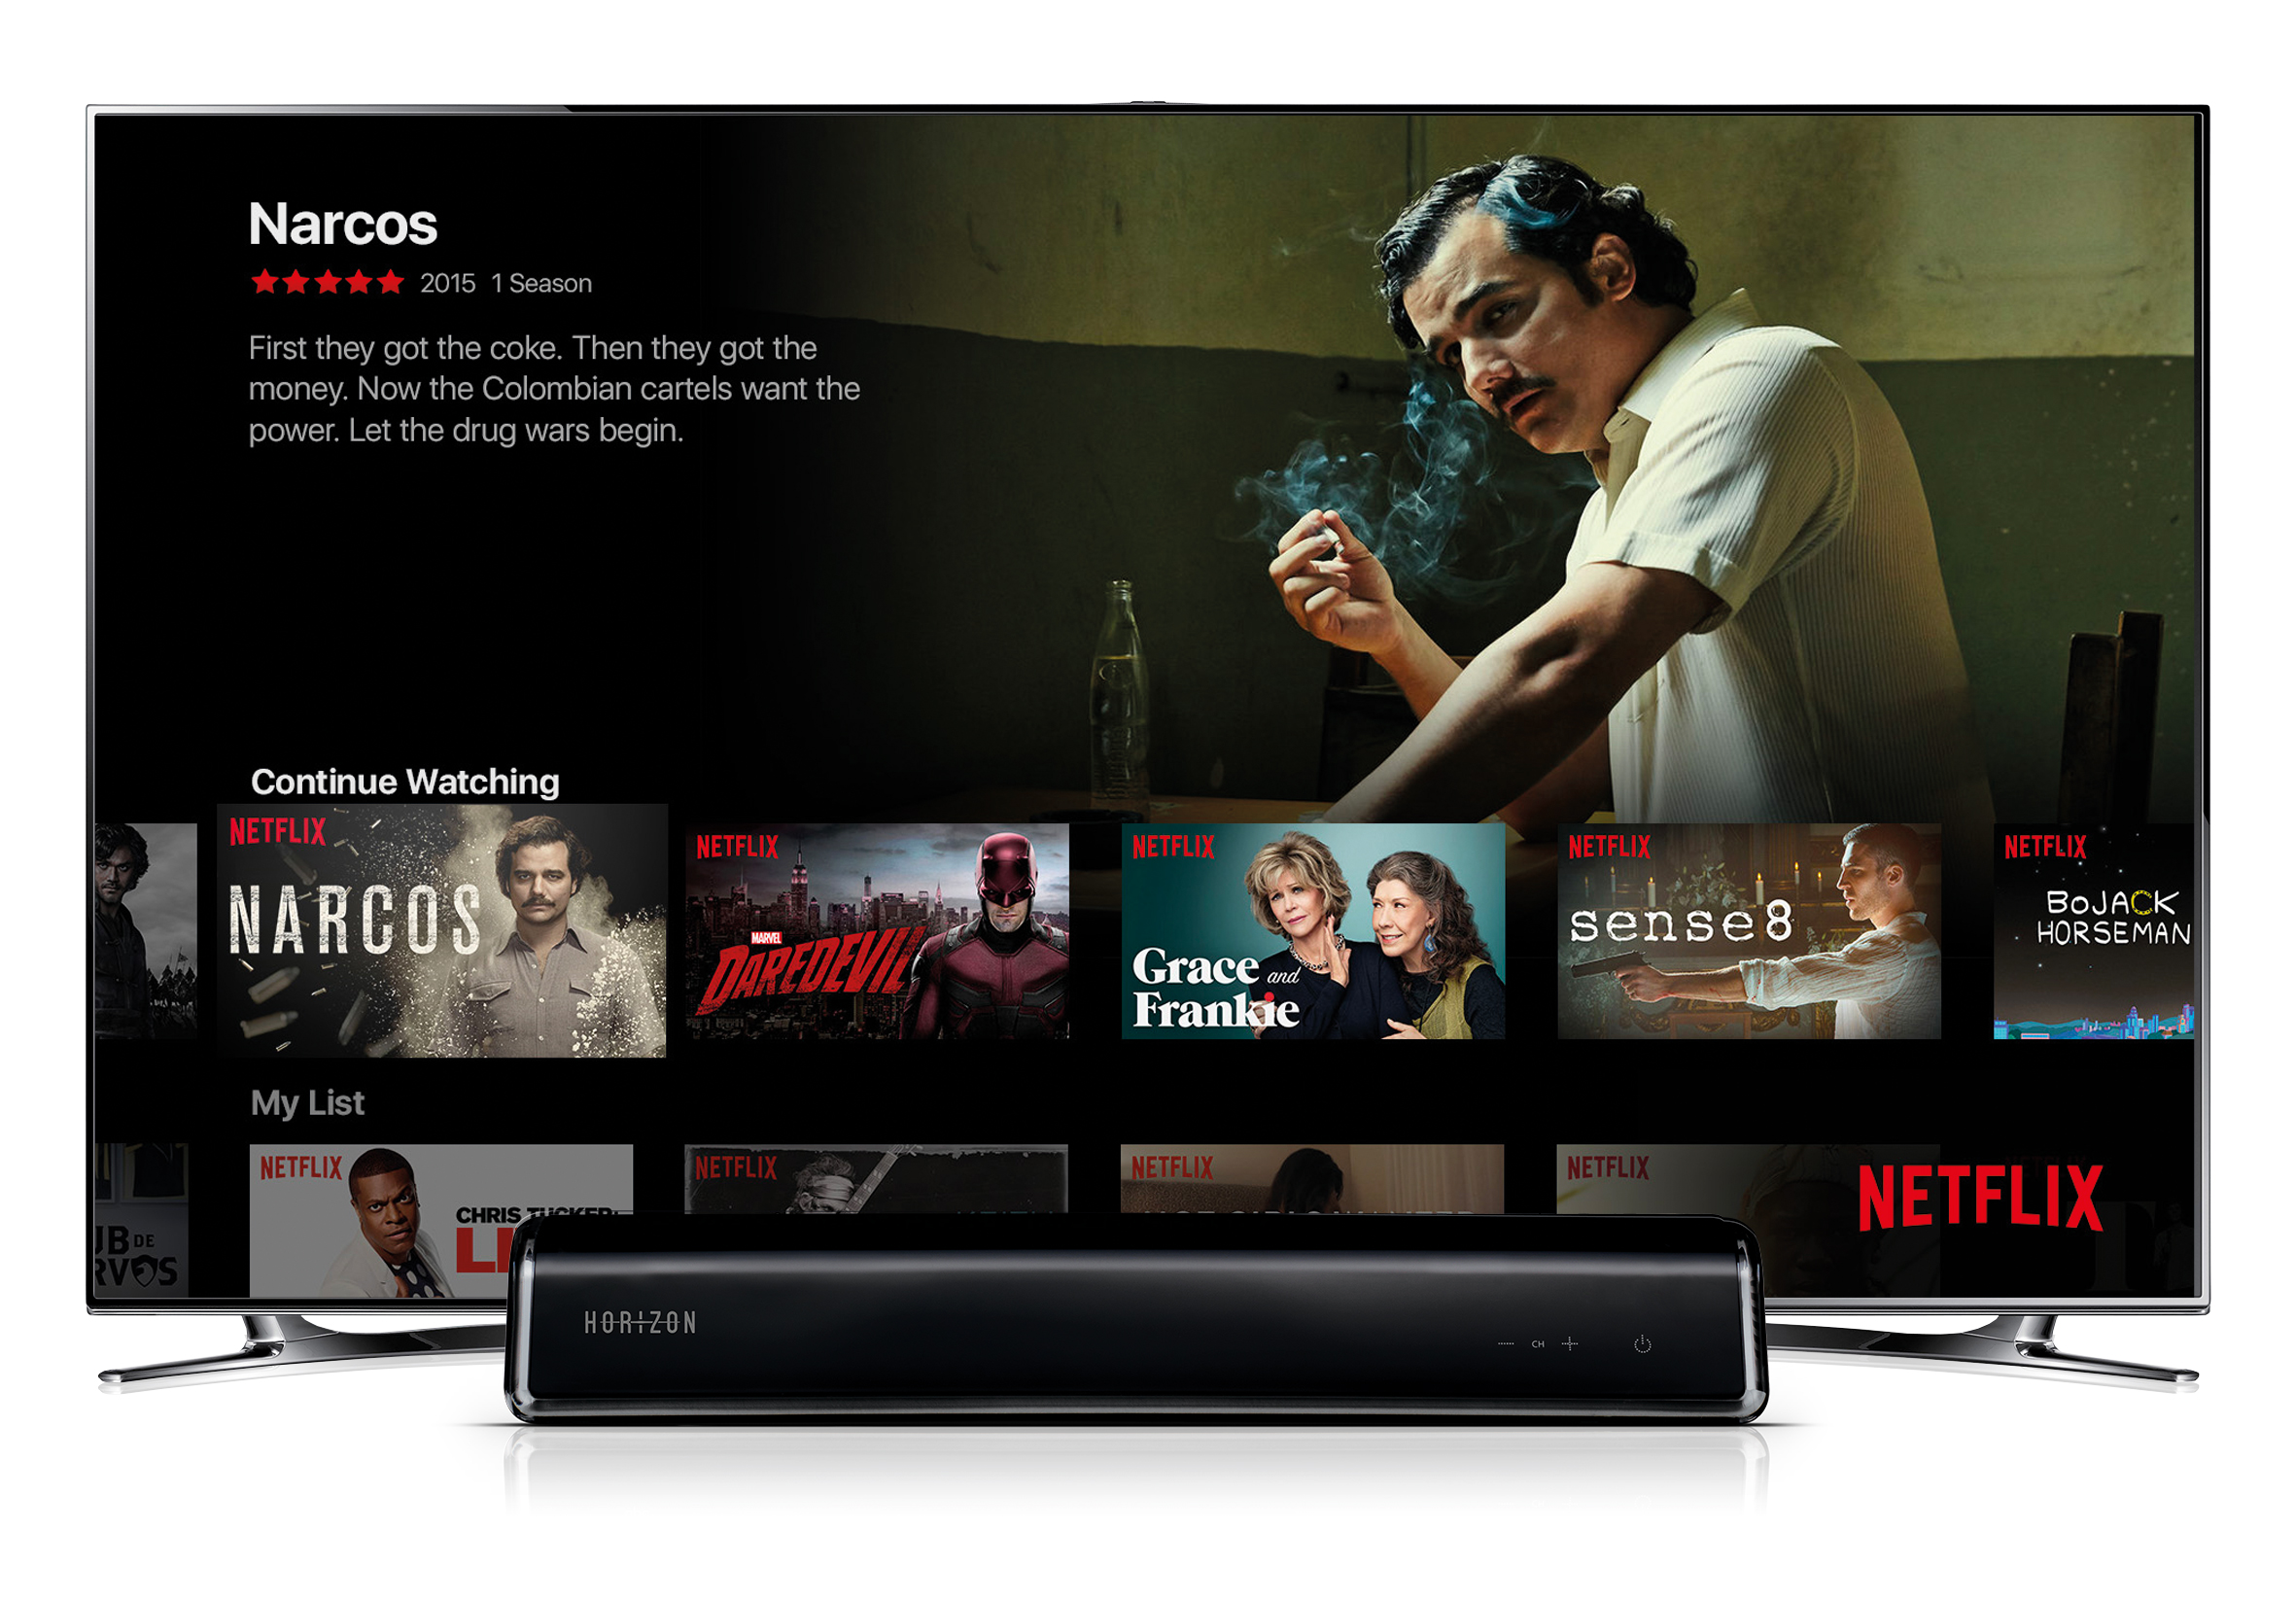 "Narcos" - eine der erfolgreichsten Netflix-Serien jetzt auf deiner Horizon